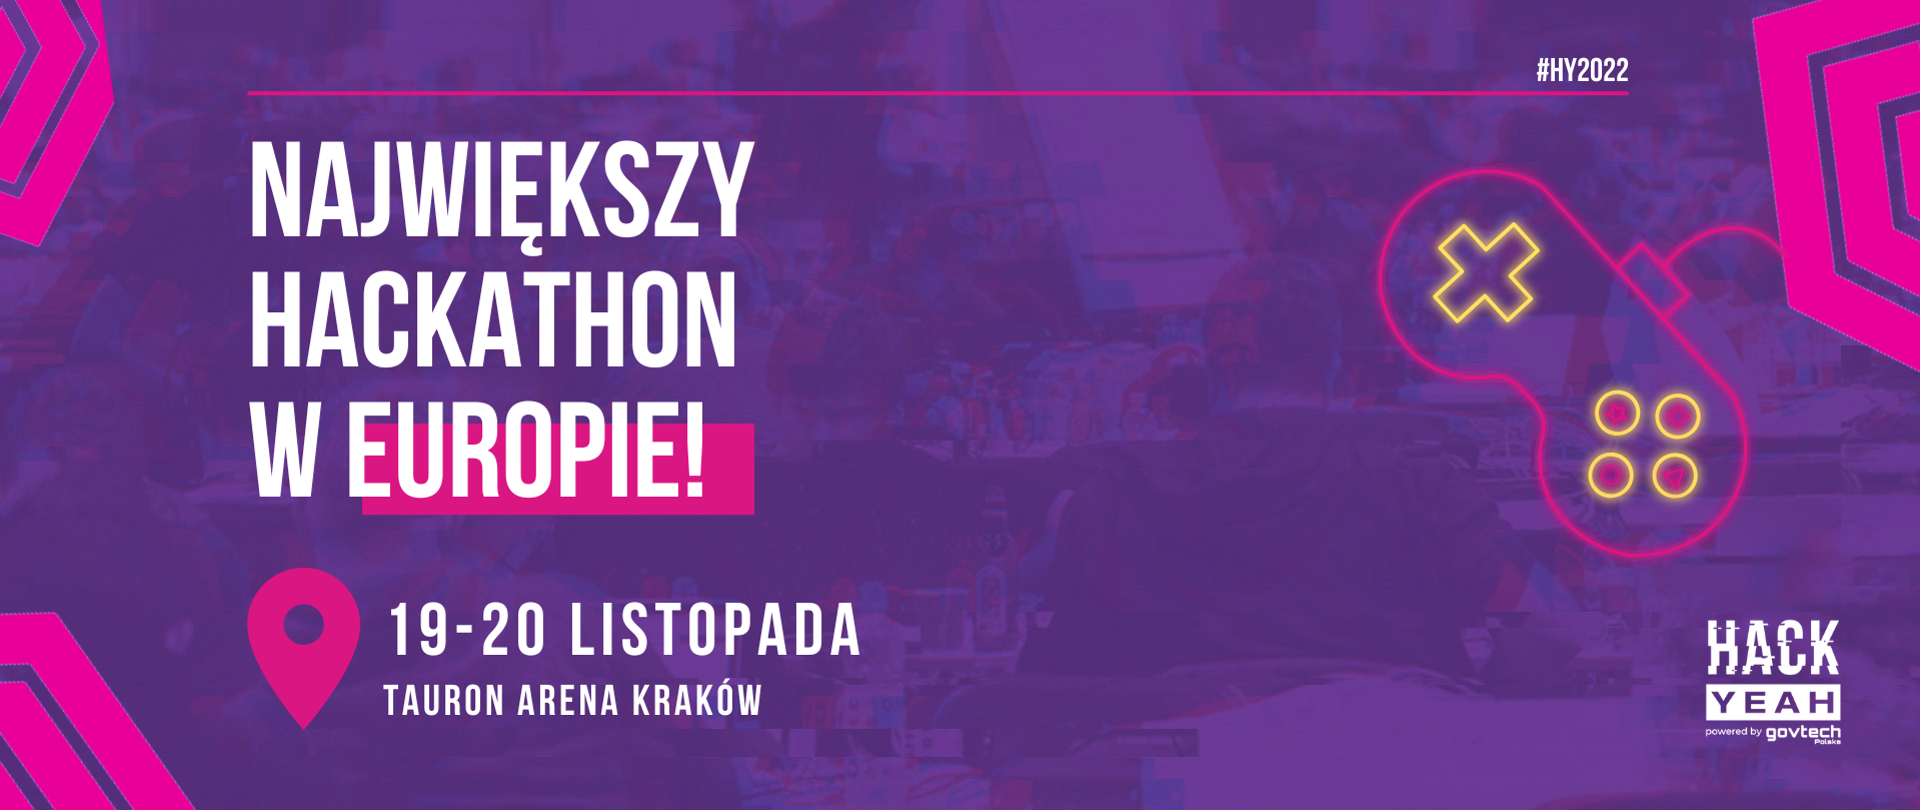 Największy Hackathon w Europie. 19-20 listopada Tauron Arena Kraków. HackYeah powered by GovTech